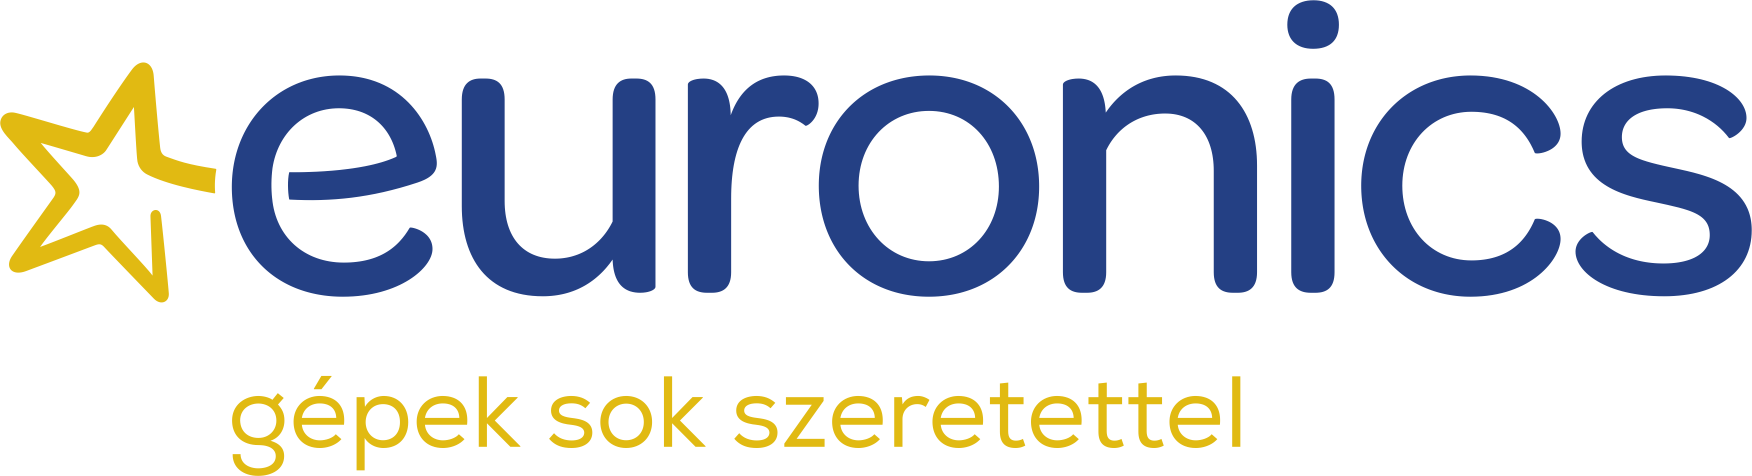 Euronics Műszaki Áruházlánc logó